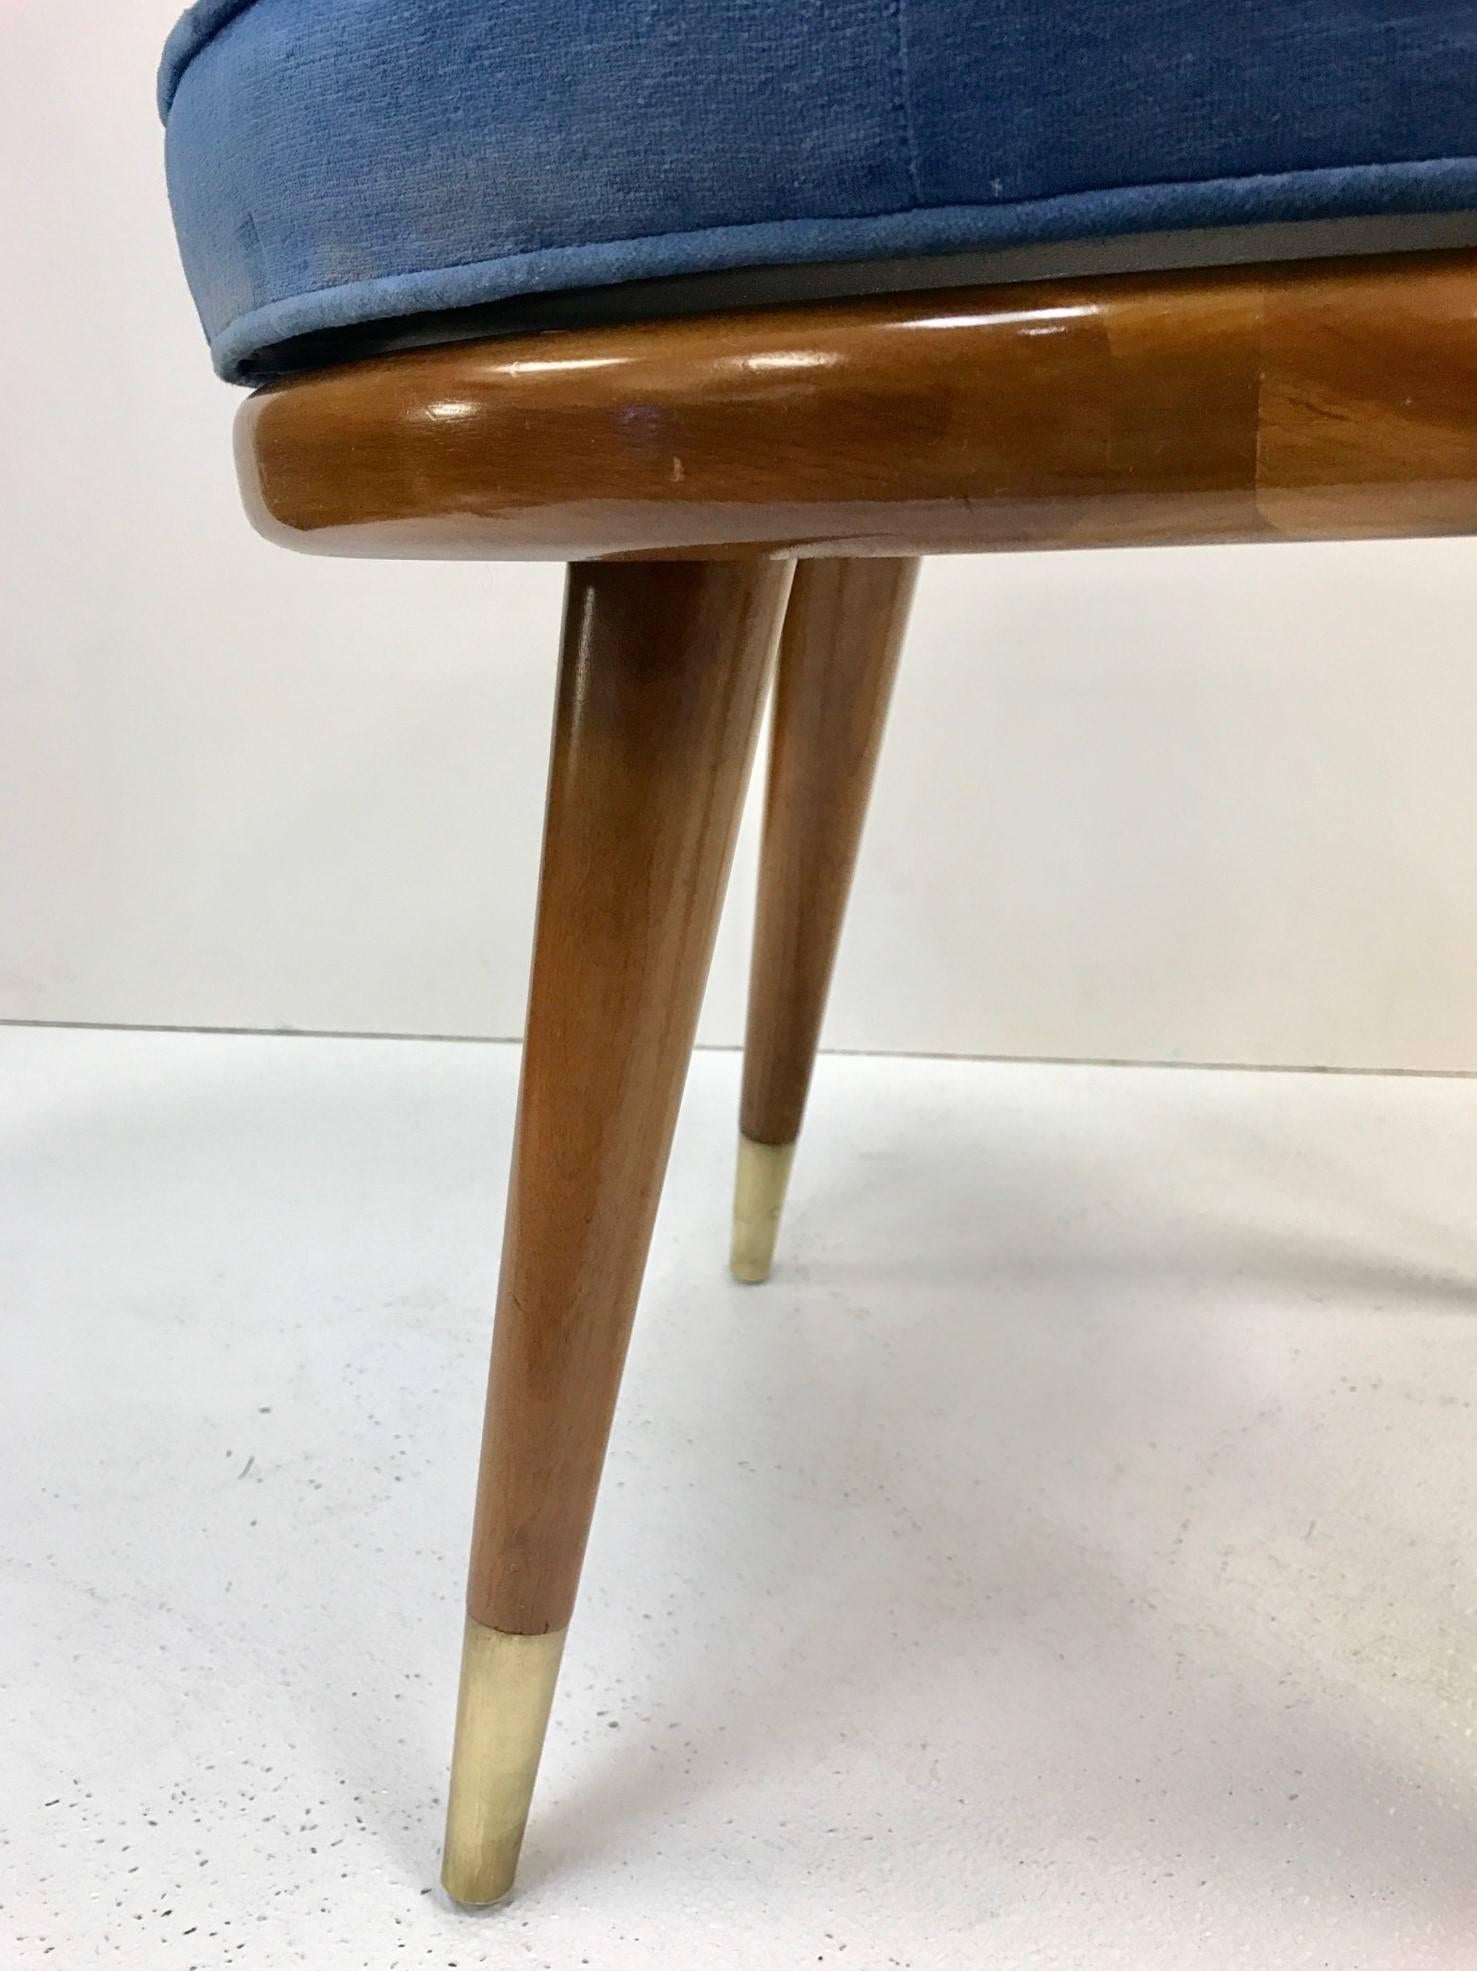 Swivel stool style of Robsjohn-Gibbings. The stool has the original blue velvet upholstered seat, wood frame with brass sabots. Mid Century Modern.